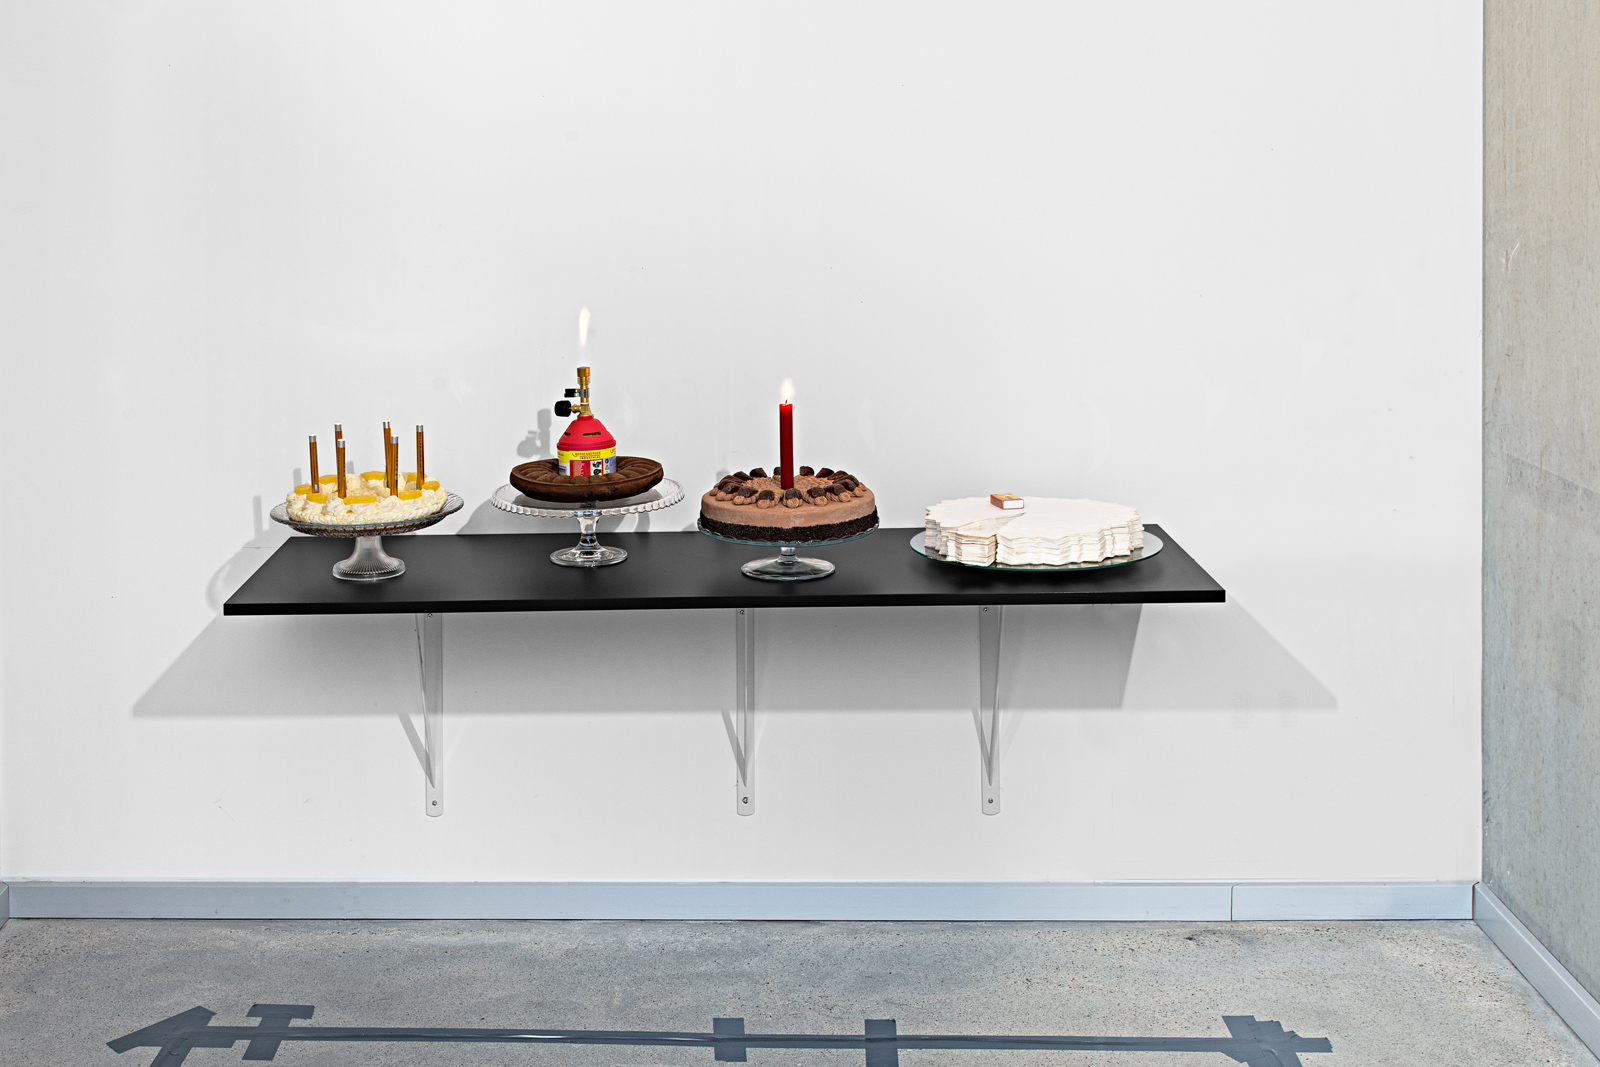 Kunst-Objekt von Josephine Riemann: Echte oder künstliche Kuchen sind zusammen mit Diagnostiktaschenlampen, einer Kerze, einem Bunsenbrenner oder Streichhölzern ausgestellt.  